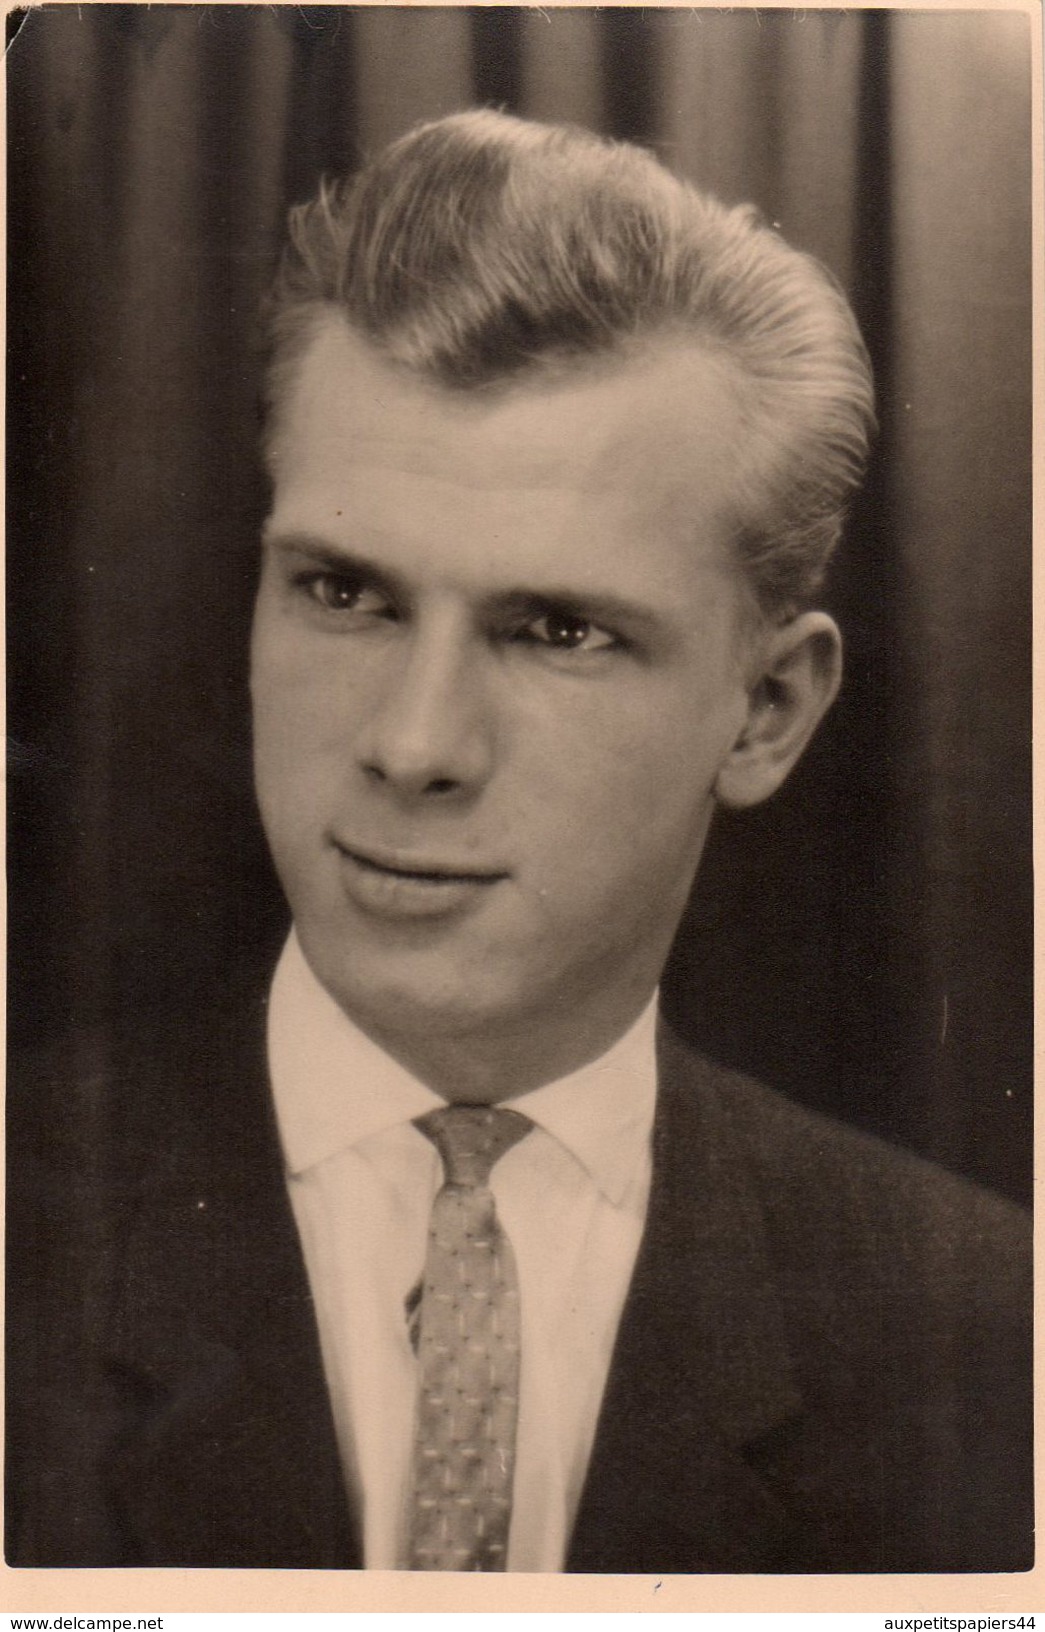 Carte Photo Originale Homme - Portrait D'un Beau Jeune Homme Plein D'assurance Dans Le Regard & Cravate En 1960 - Personnes Anonymes